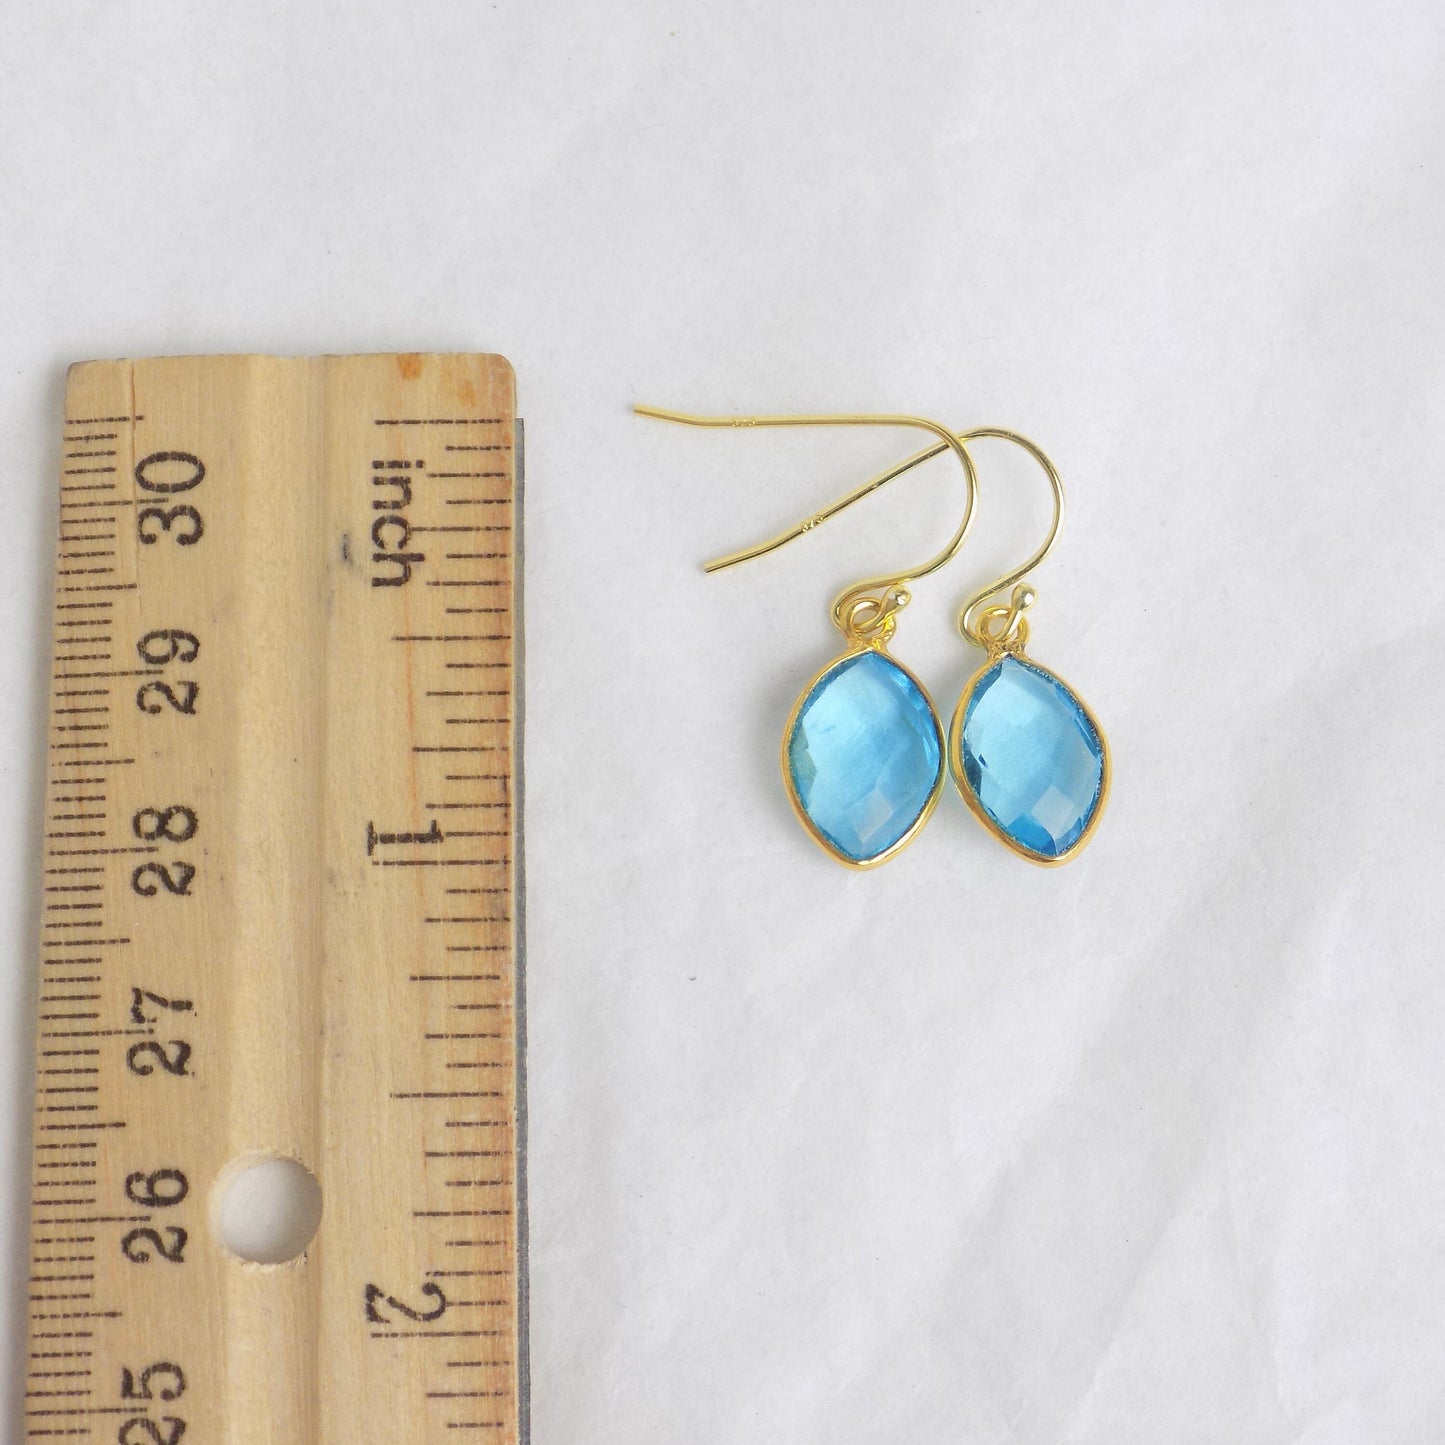 Blue Topaz Dangle Earrings Gold, Minimalist Gemstone Earring For Women, Christmas Gifts For Her, M6-44